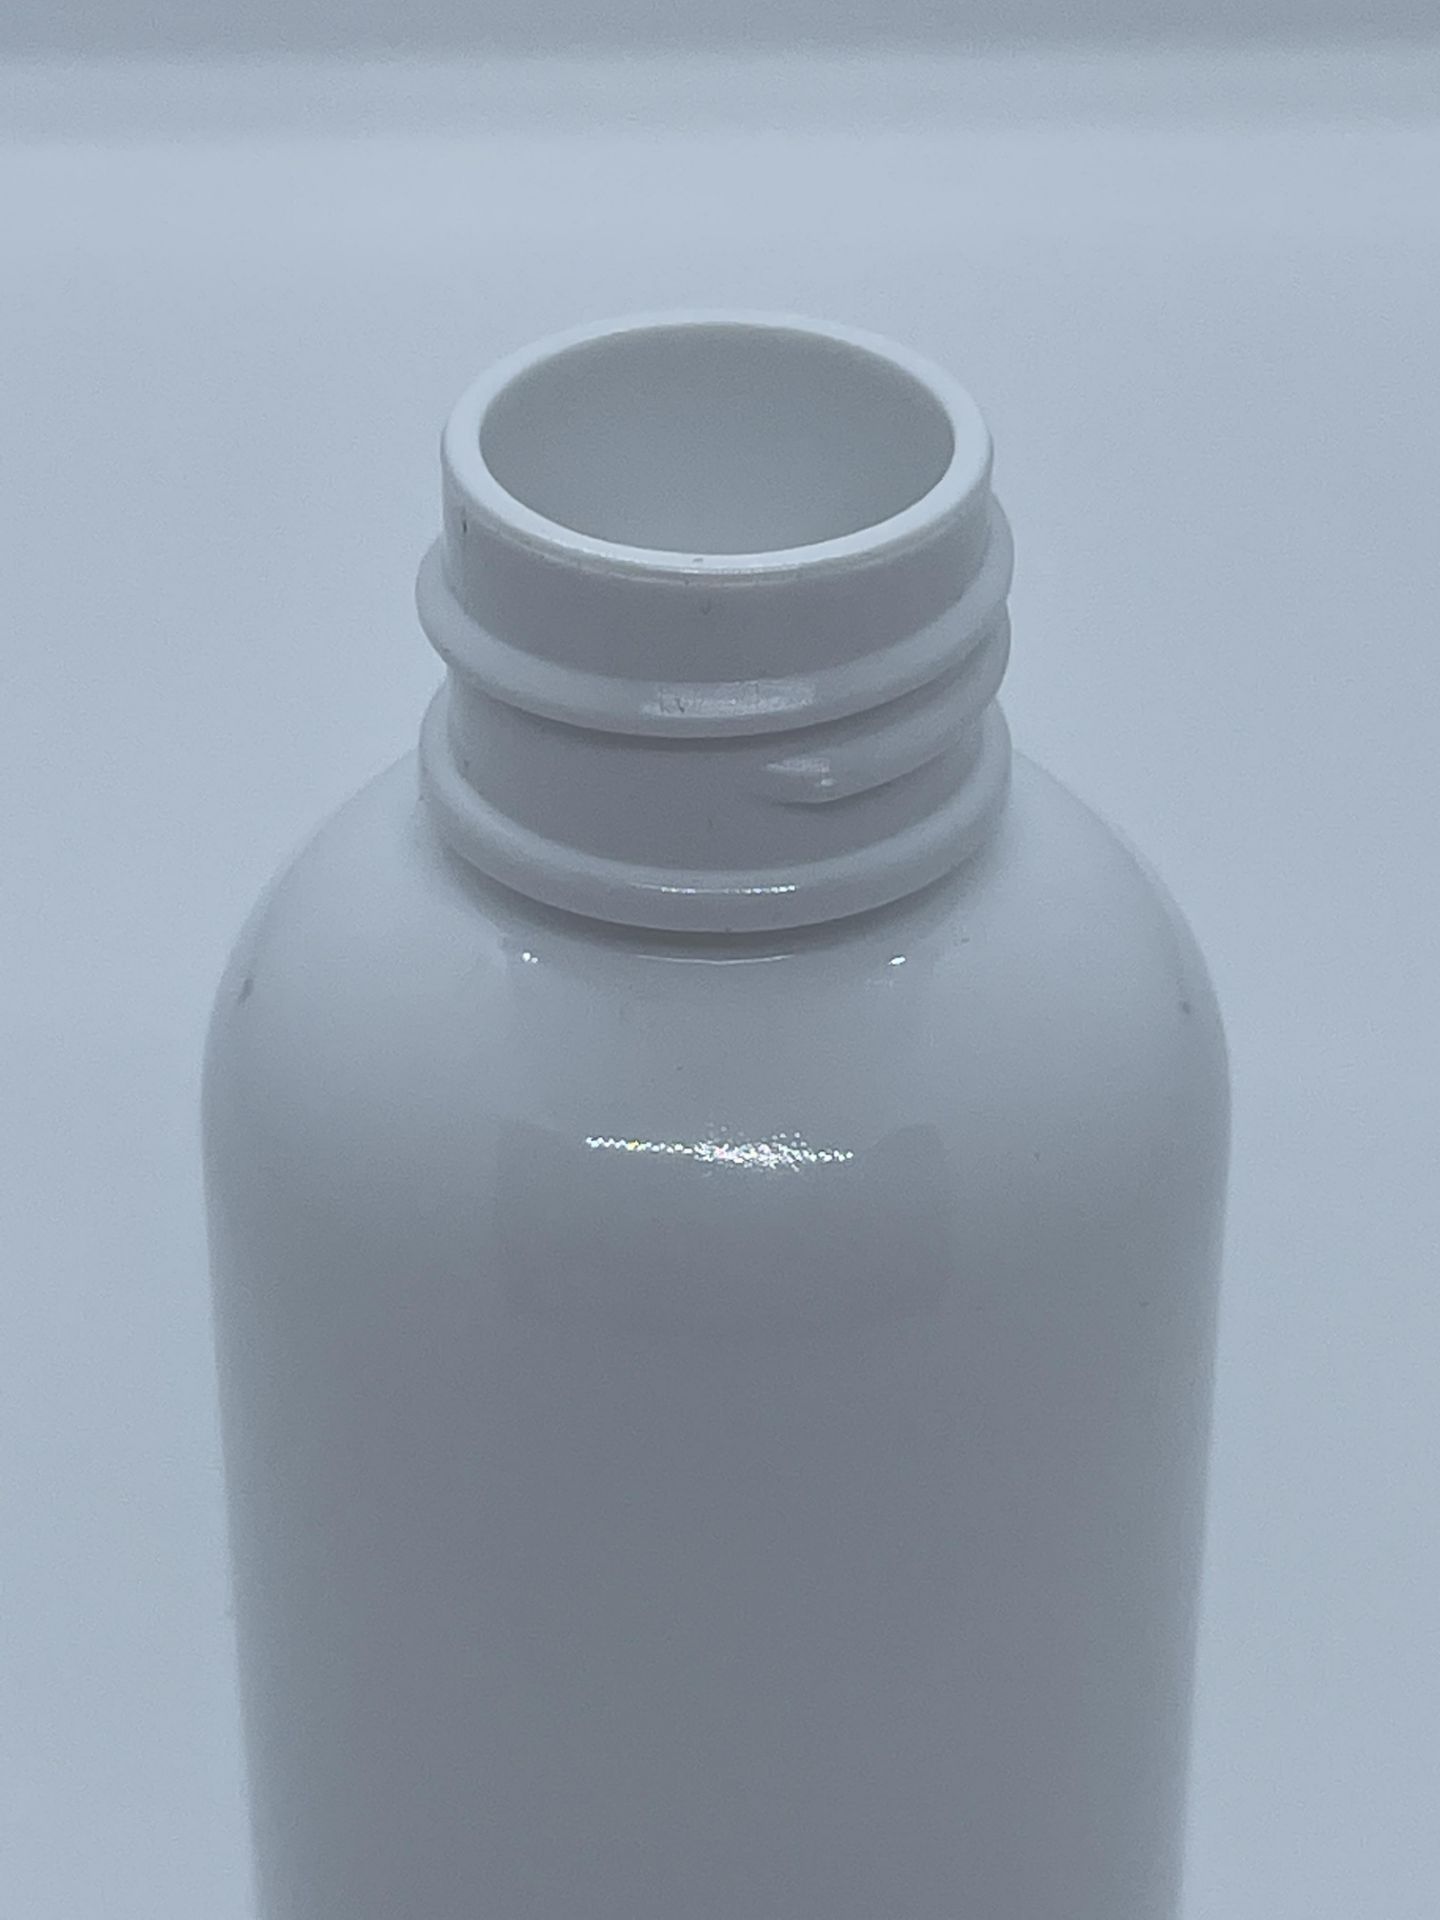 32,000 - White Plastic Bullet 2 oz Empty Bottles, 20-410 Threading Neck, 3.25" Tall, 1.25" Diameter - Image 2 of 4